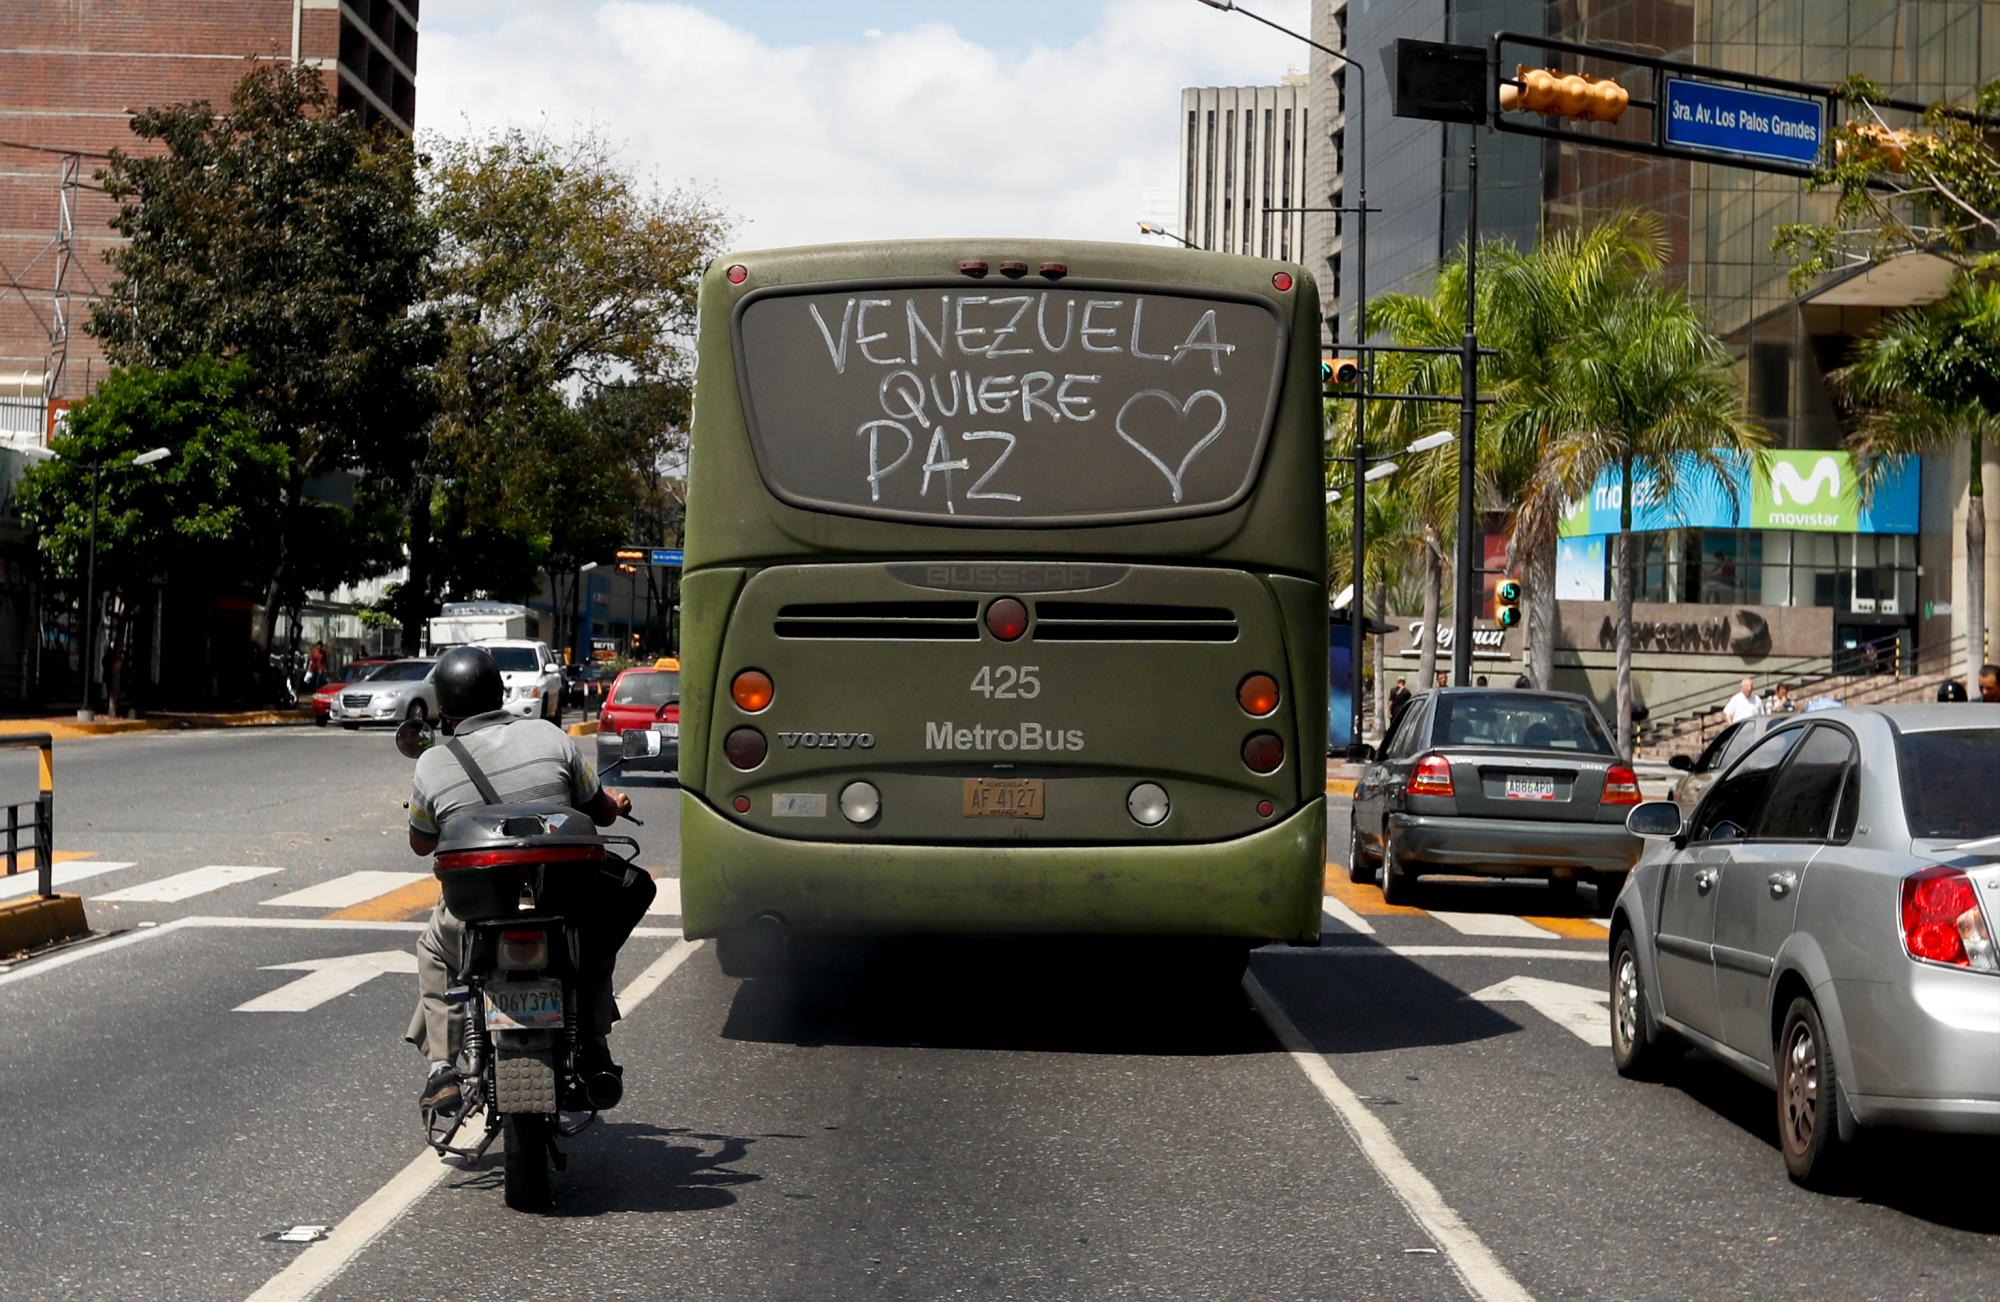 Un autobús con un mensaje en su ventana trasera que lee en español: “Venezuela quiere paz” recorre las calles de Caracas, Venezuela, el jueves 14 de marzo de 2019. Con largas colas en las paradas de transporte público y multitudes de personas en la entrada de algunas agencias bancarias, los venezolanos volvieron a la actividad el jueves después de cuatro días de parálisis como resultado del mayor apagón en la historia del país.